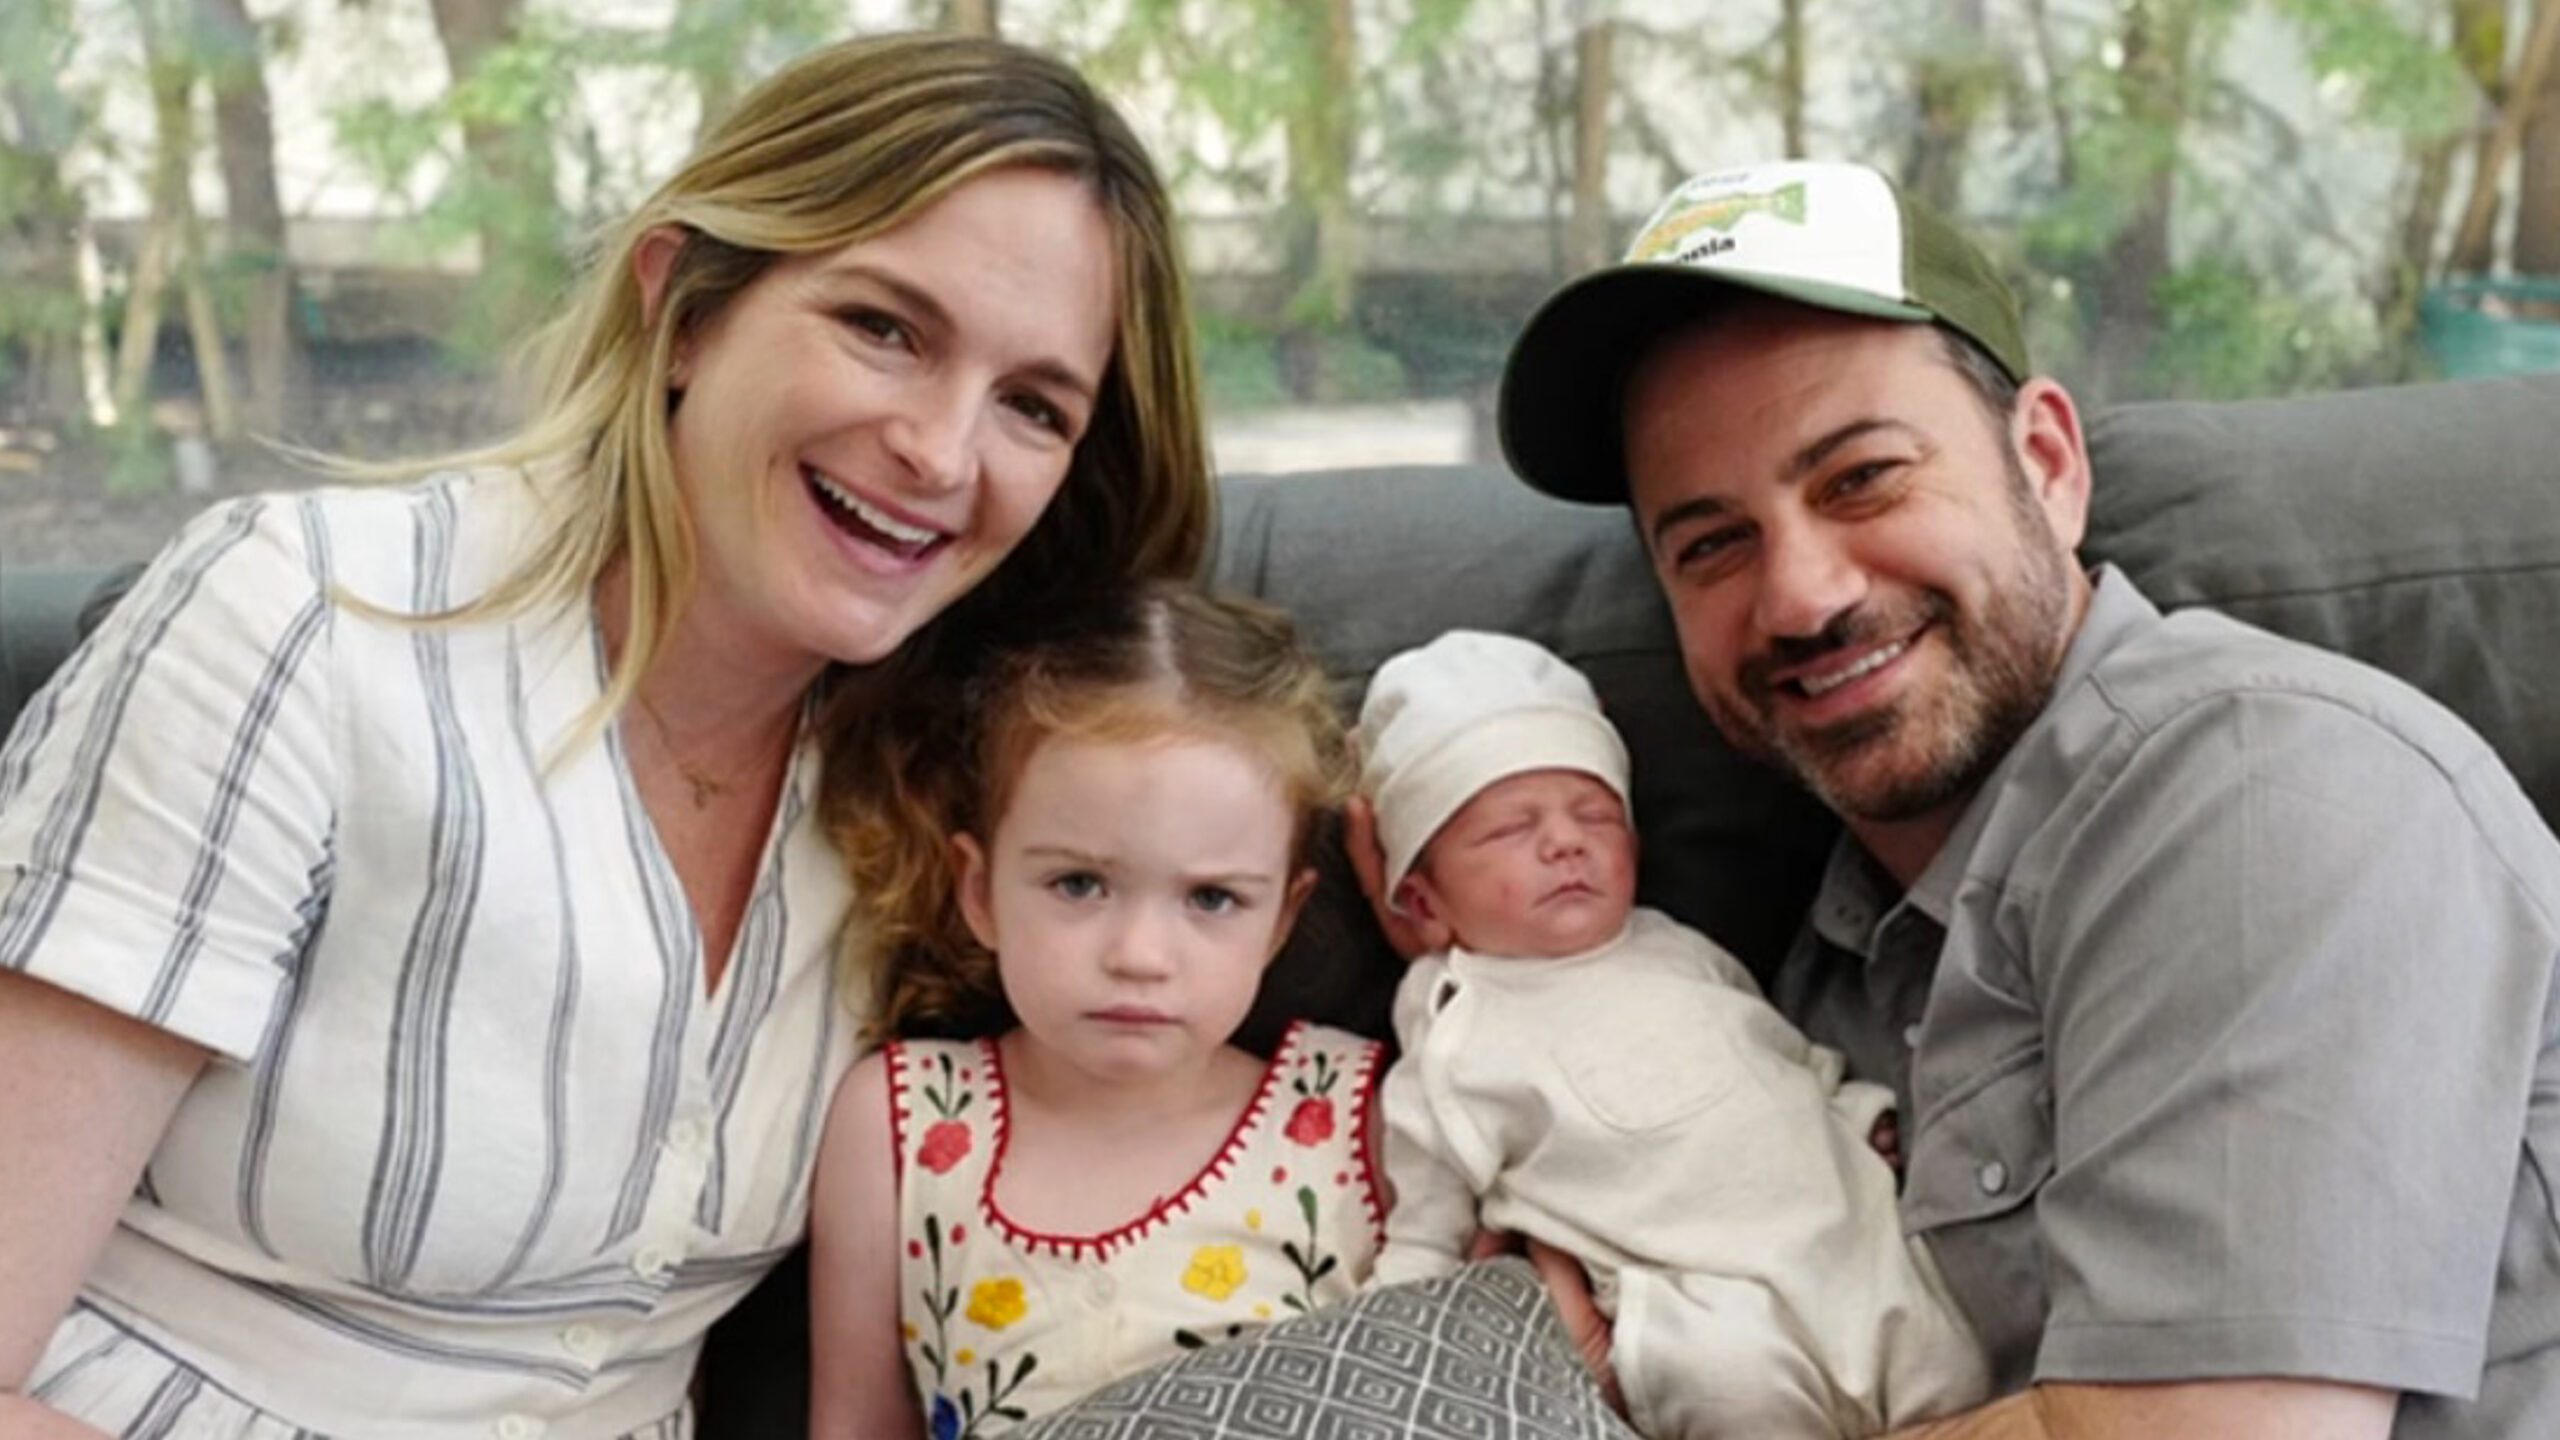 WATCH: Jimmy Kimmel opens up on newborn son’s heart surgery